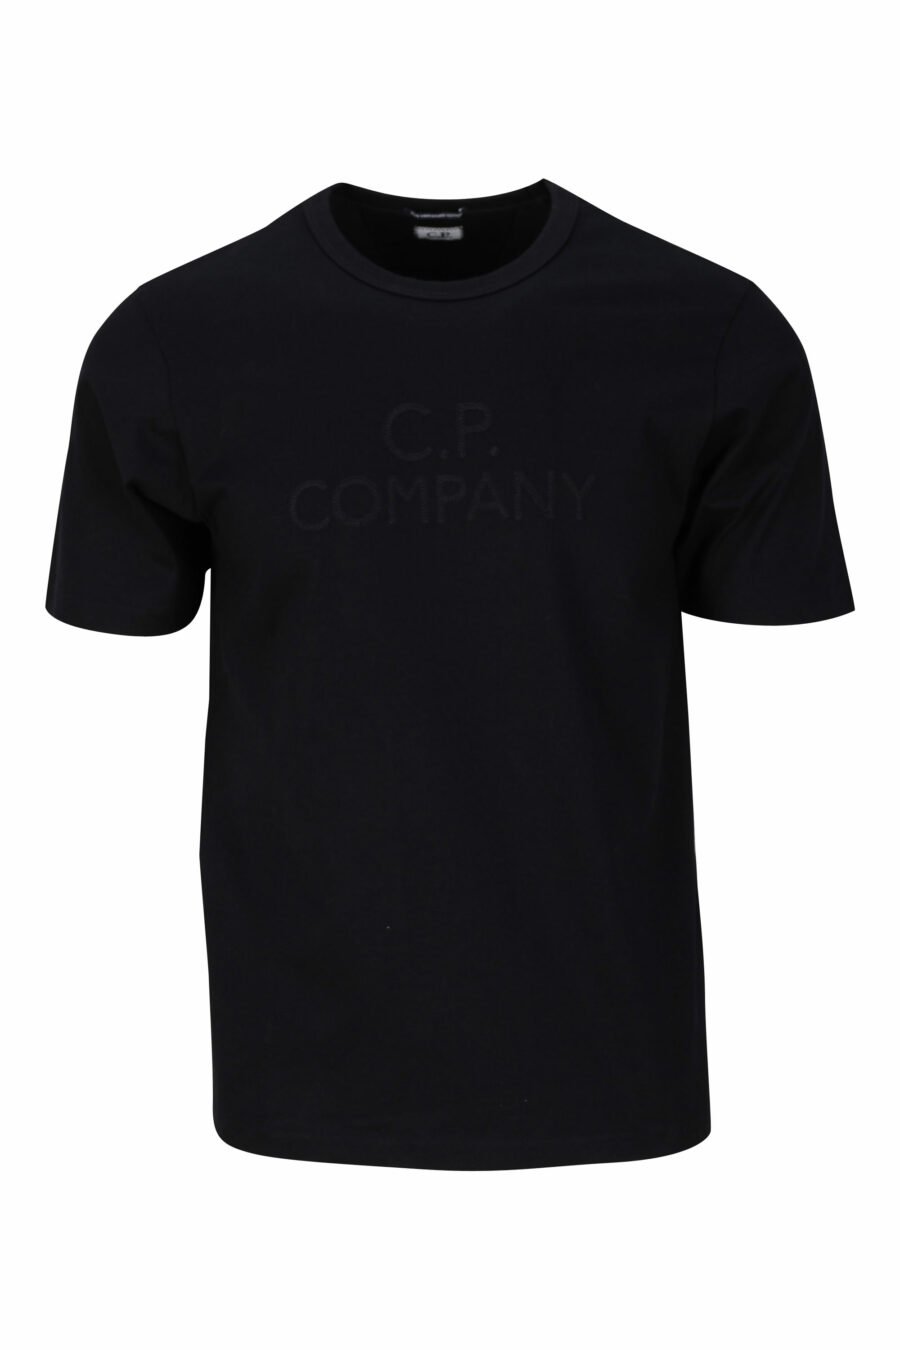 Camiseta negra con maxilogo bordado monocromático - 7620943765922